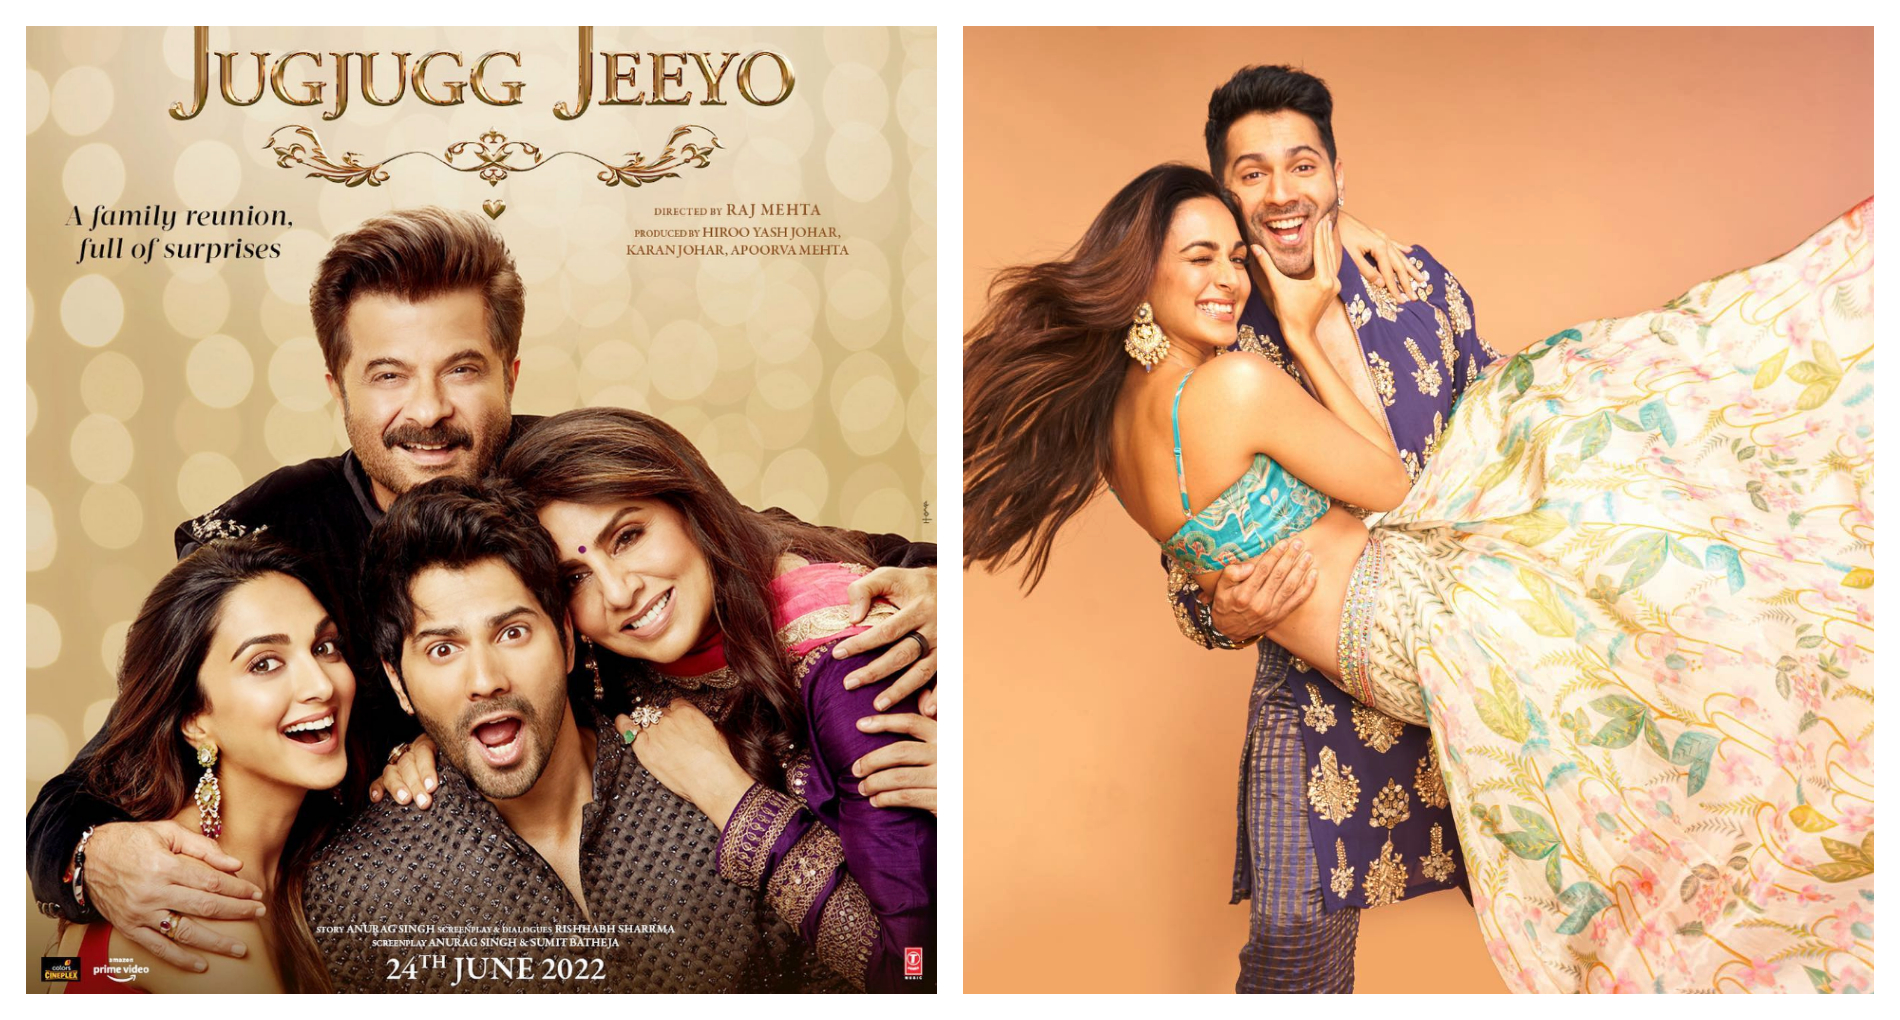 Jug Jug Jeeyo Trailer: Varun Dhawan और Kiara Advani की जोड़ी है तैयार, जुग जुग जियो में मचाएगी धमाल